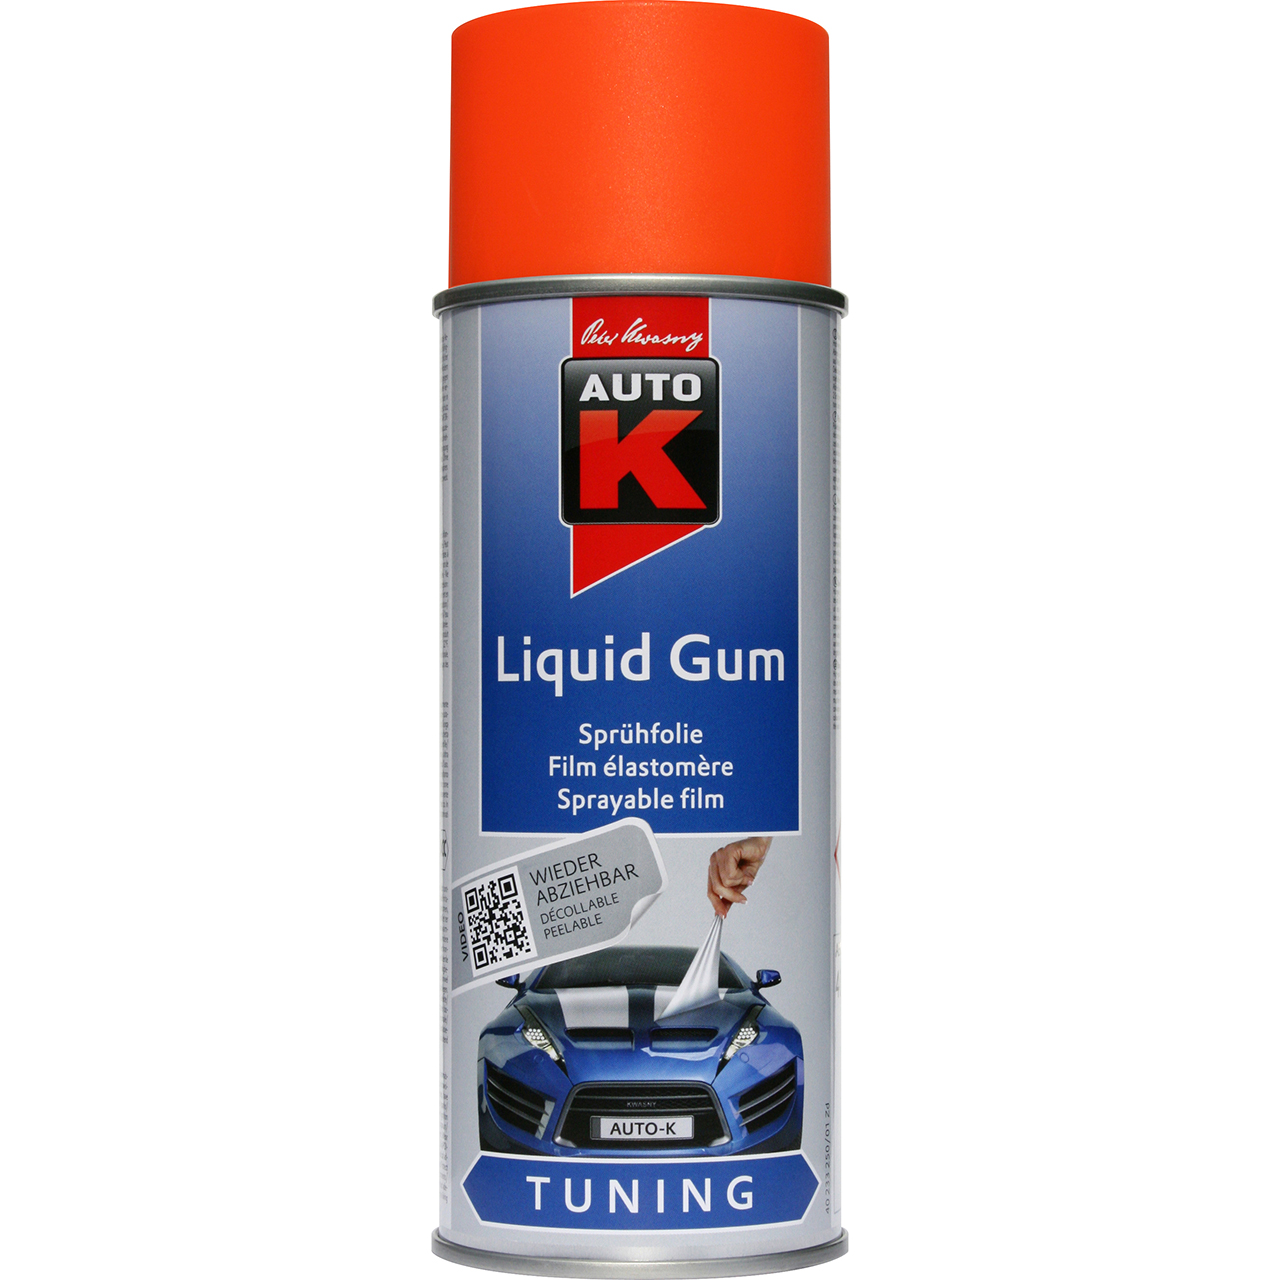 Auto-K Tuning Liquid Gum neonorange 400ml